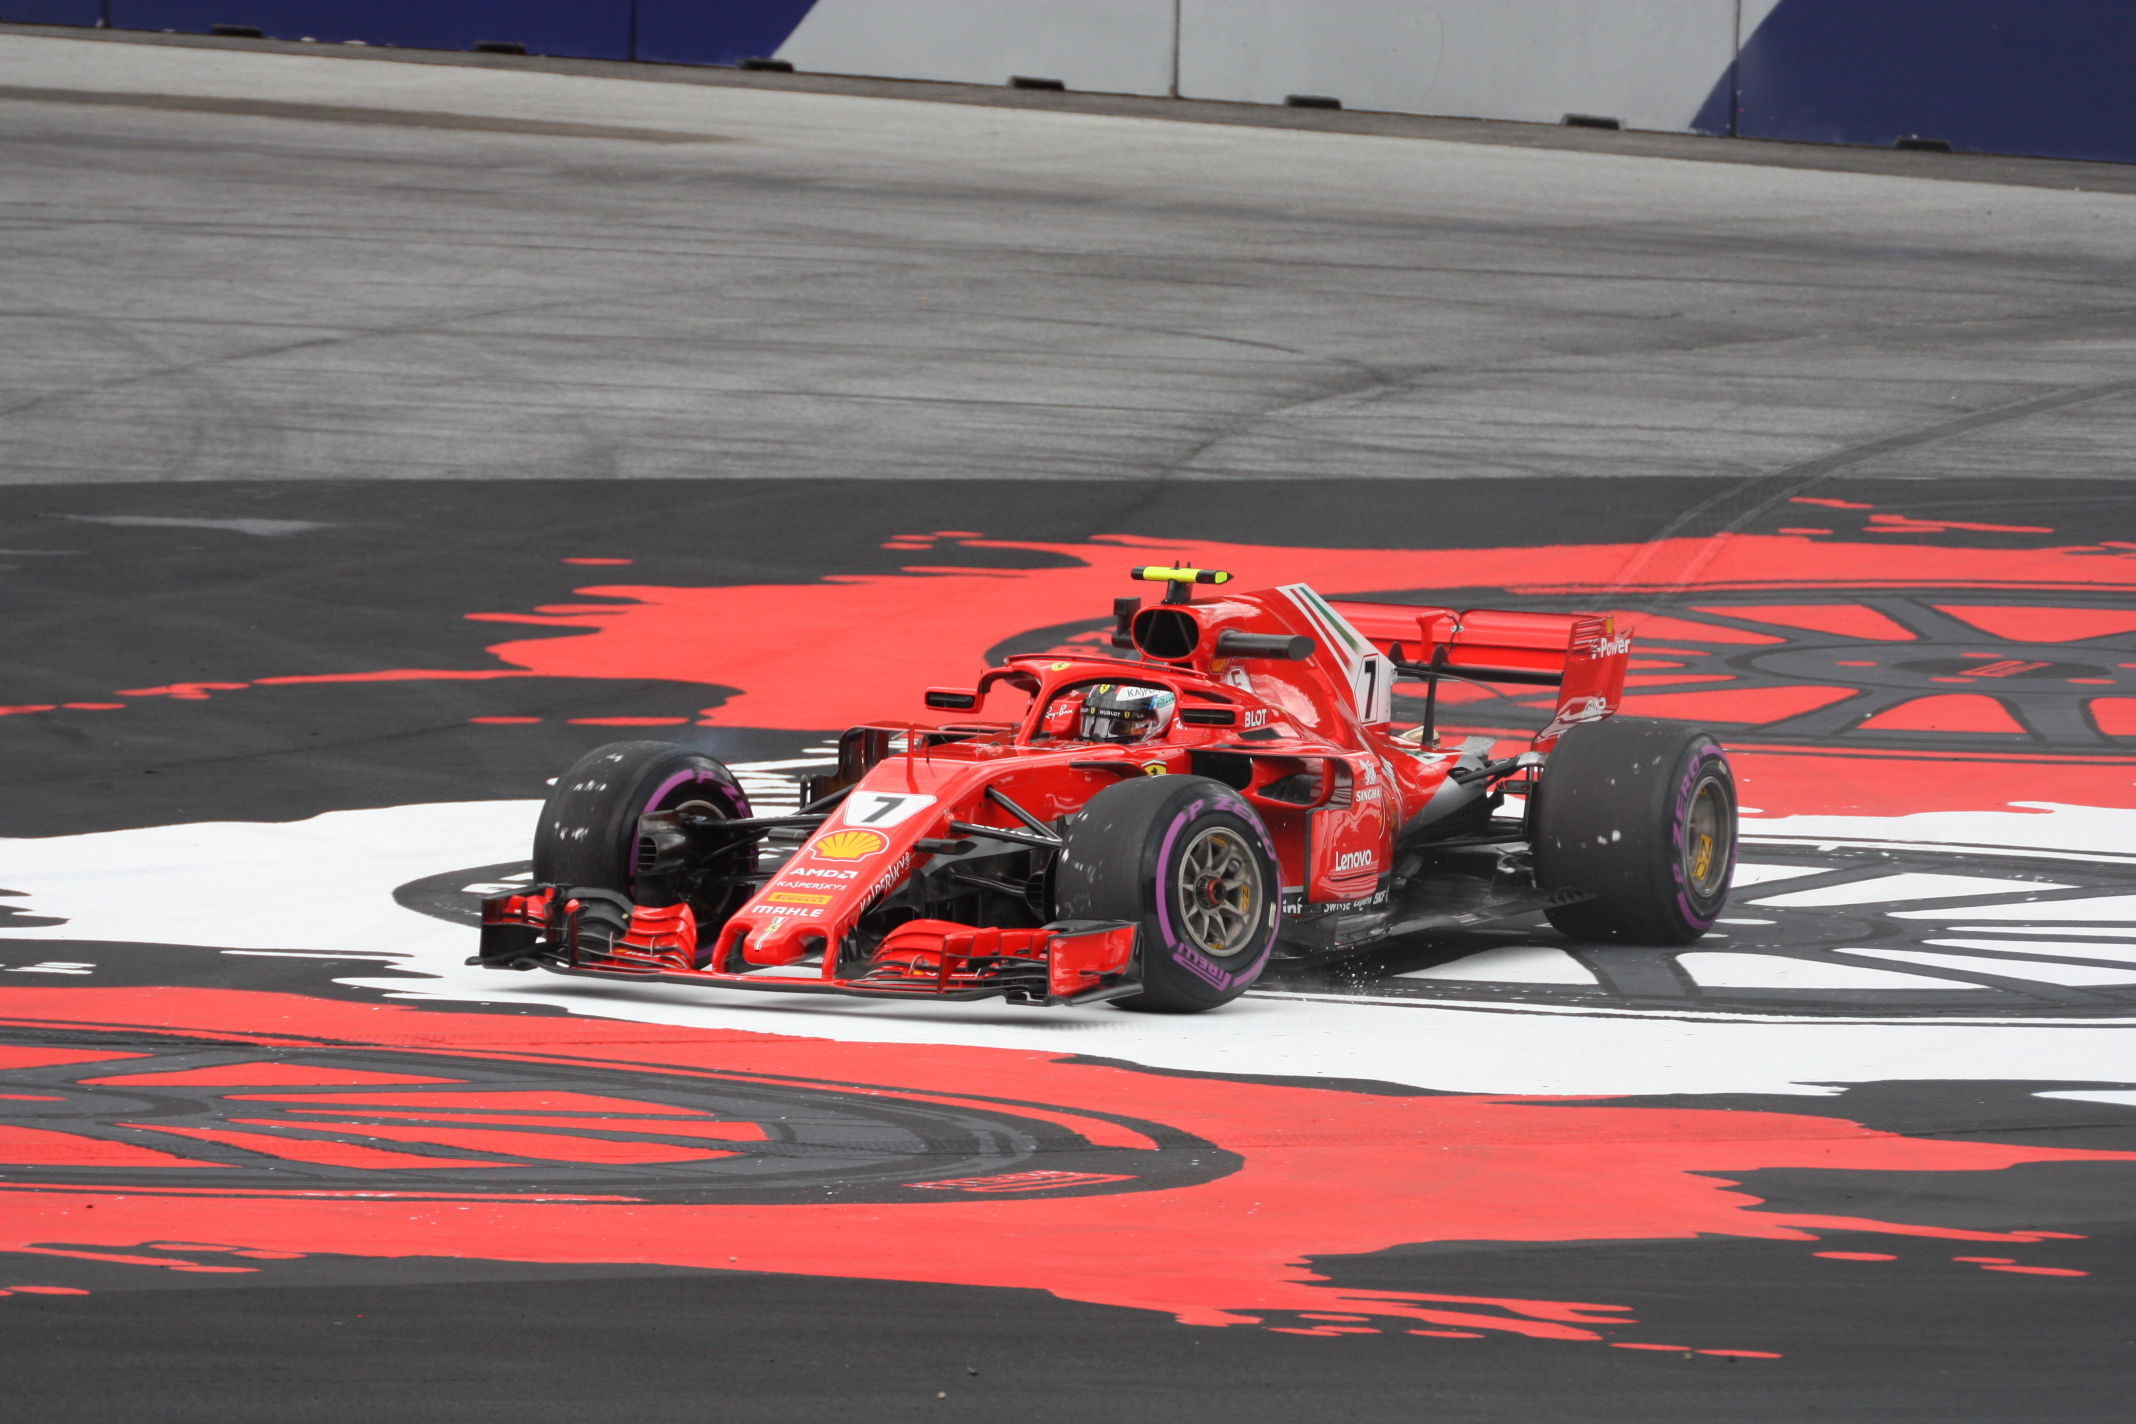 V tréninku byl Kimi Raikkonen několikrát „mimo“, v závodě ovšem směl dojet před Vettelem 2